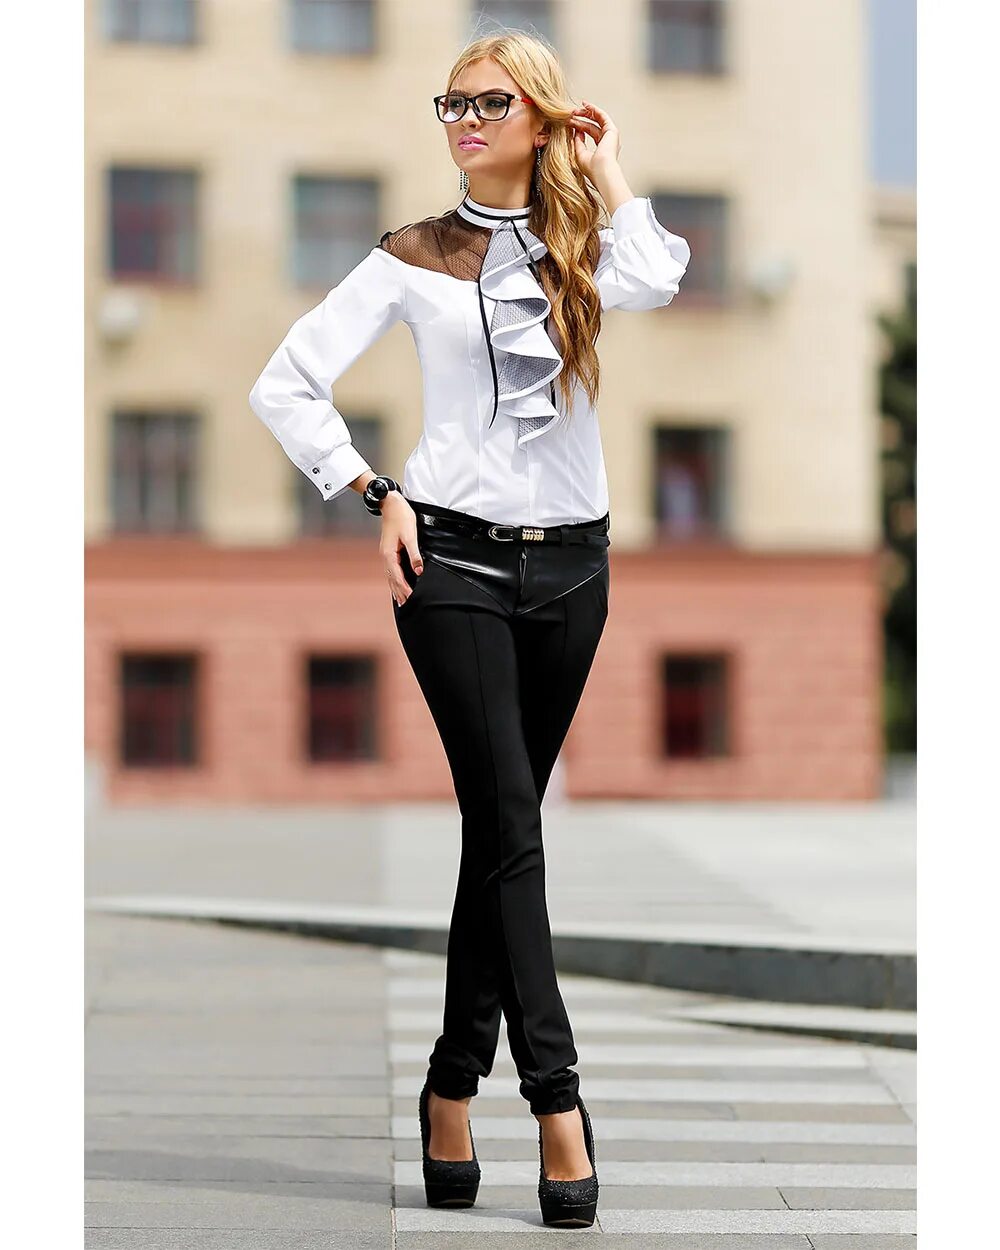 Белая кофта черные штаны. Стильная одежда для девушек. Классическая одежда для девушек. Модная и стильная одежда для девушек. Модная классическая одежда для девушек.